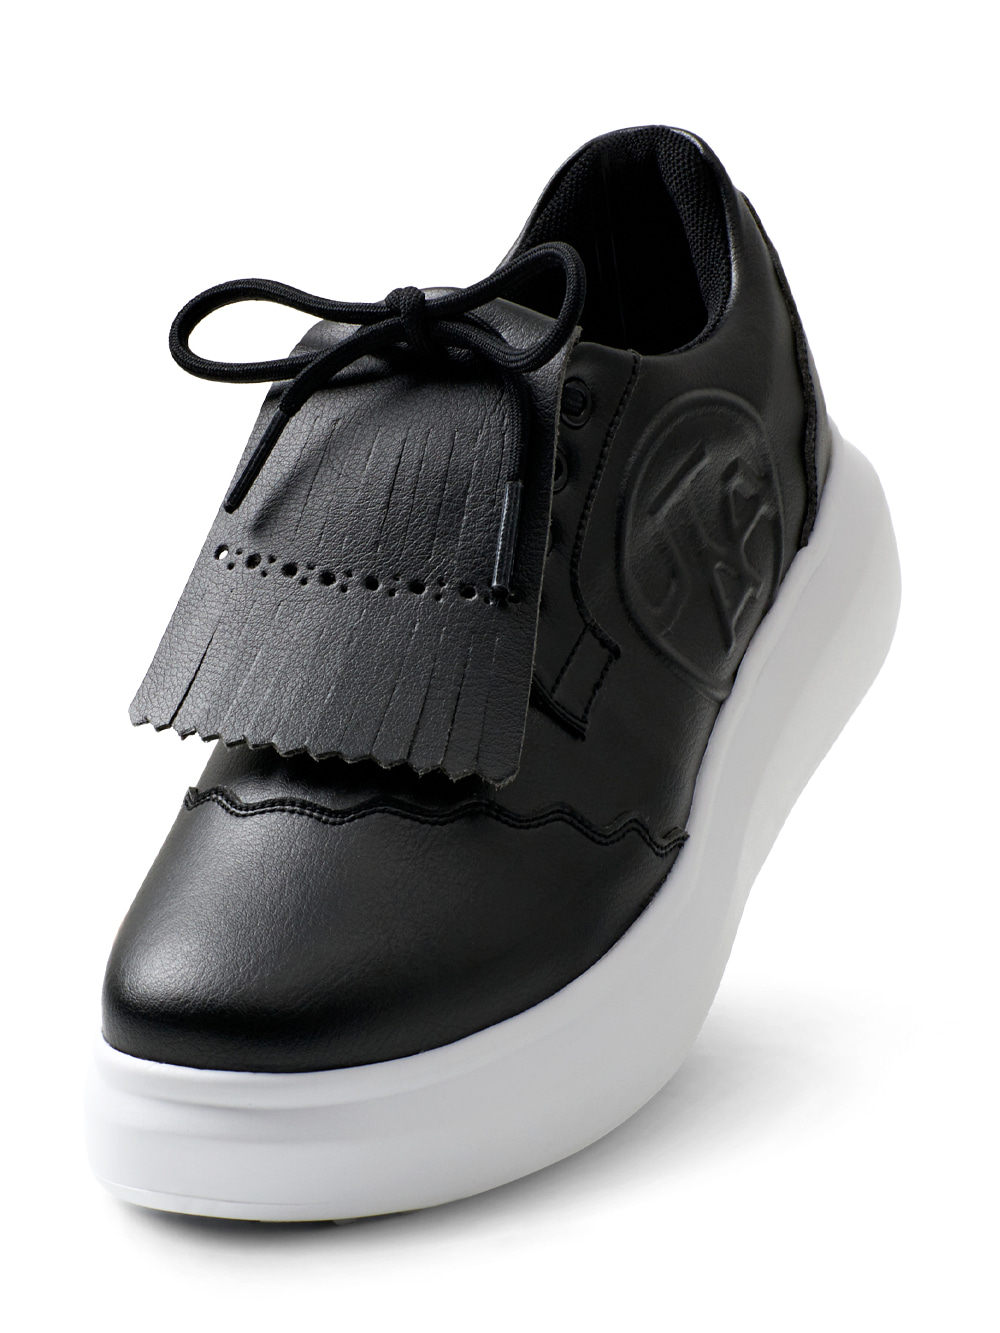 UTAA Derby Kiltie Golf Sneakers : Women&#039;s Black (UC0GHF101BK)